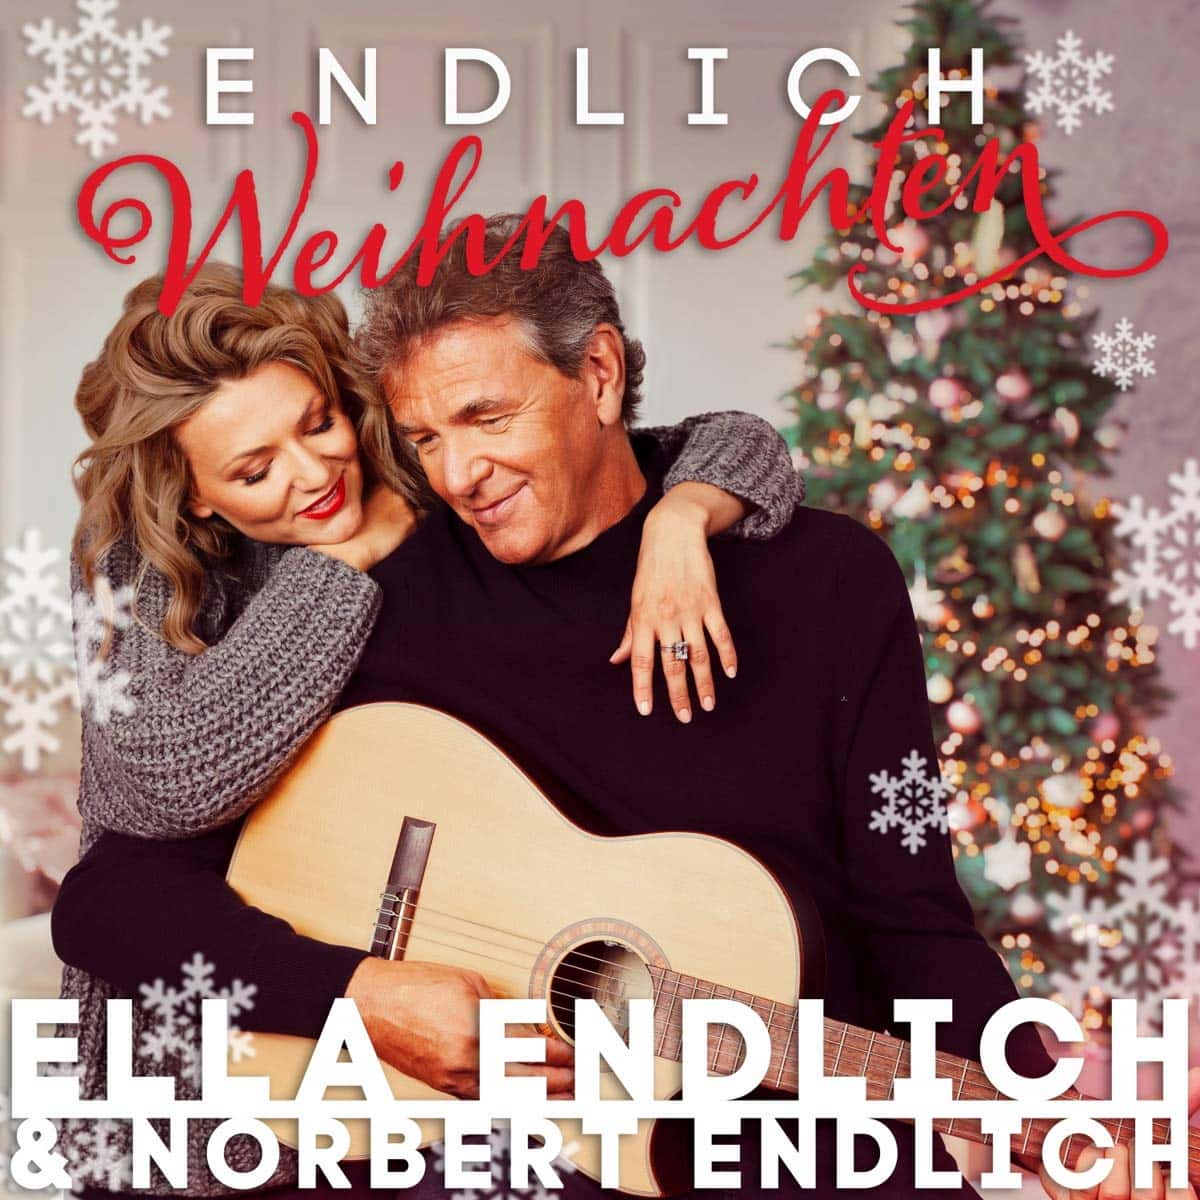 Endlich Weihnachten - Weihnachts-CD 2021 Ella Endlich & Norbert Endlich